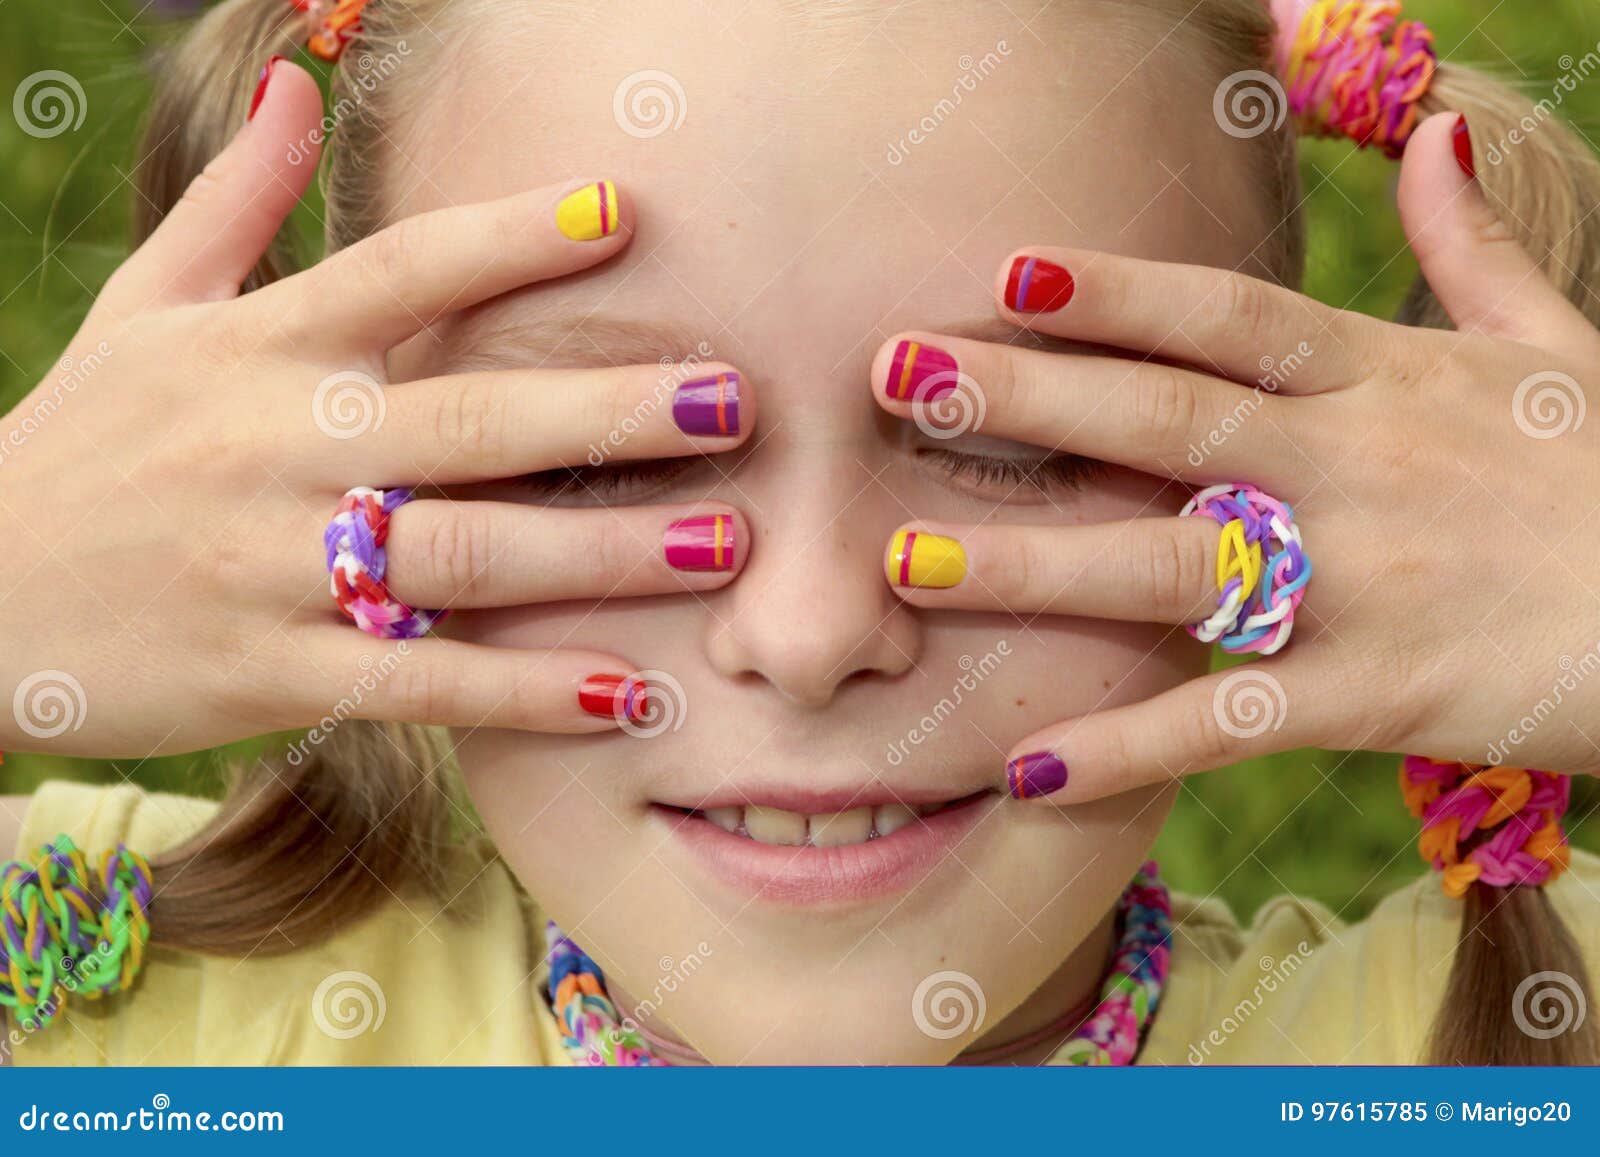 children`s multicolored manicure.